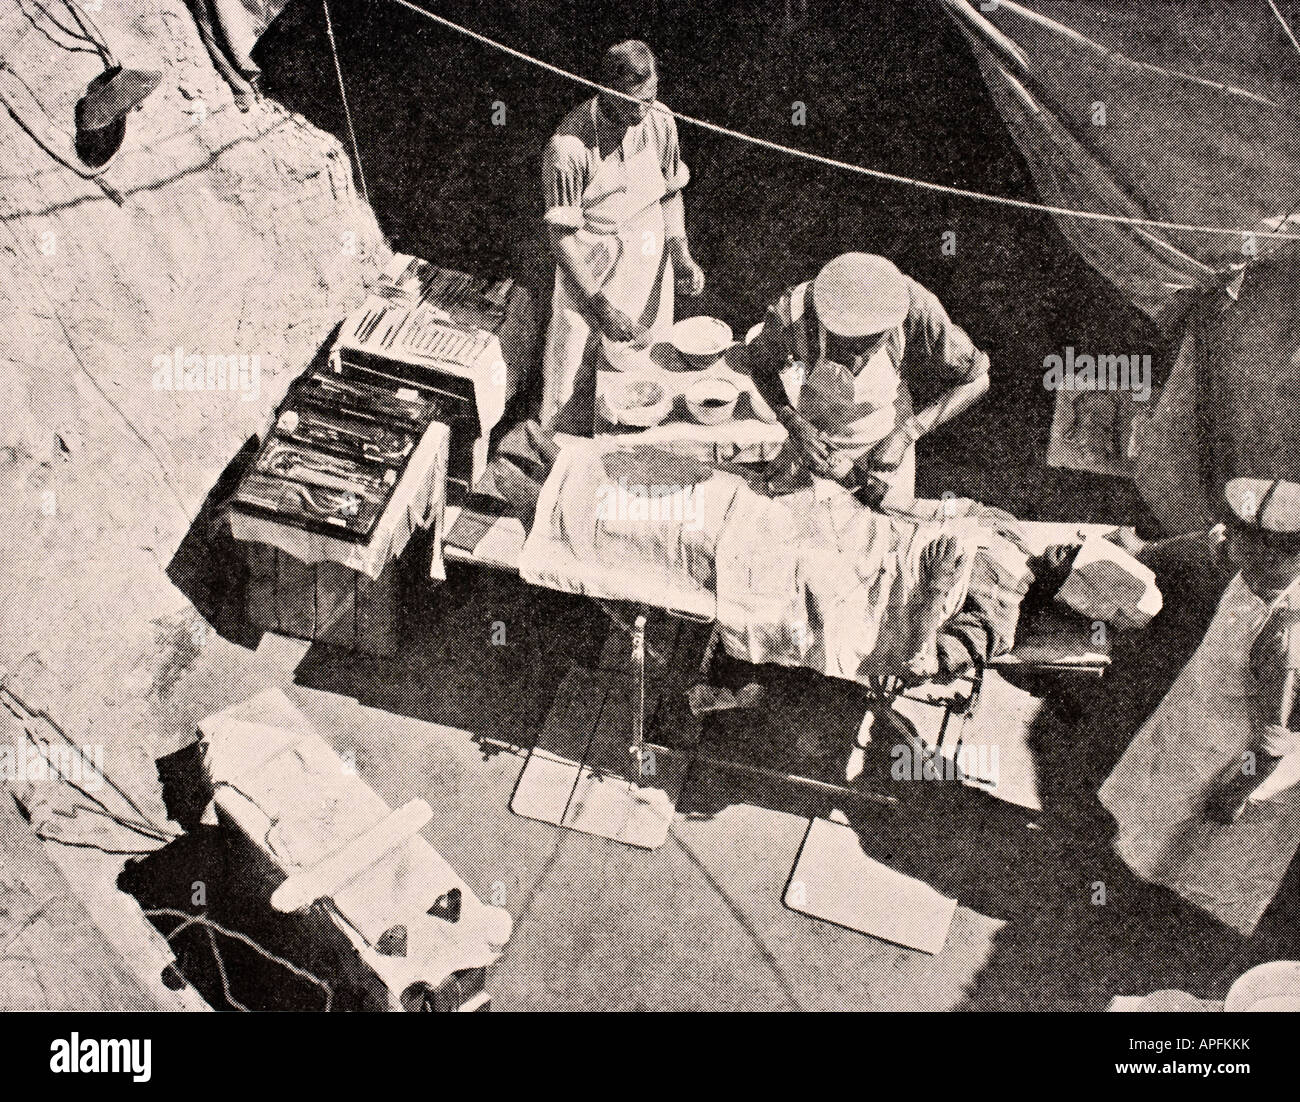 Chirurgie sur le terrain sur la péninsule de Gallipoli, Turquie 1915 pendant la première Guerre mondiale. Le chirurgien retire une balle du bras d'un soldat. Banque D'Images